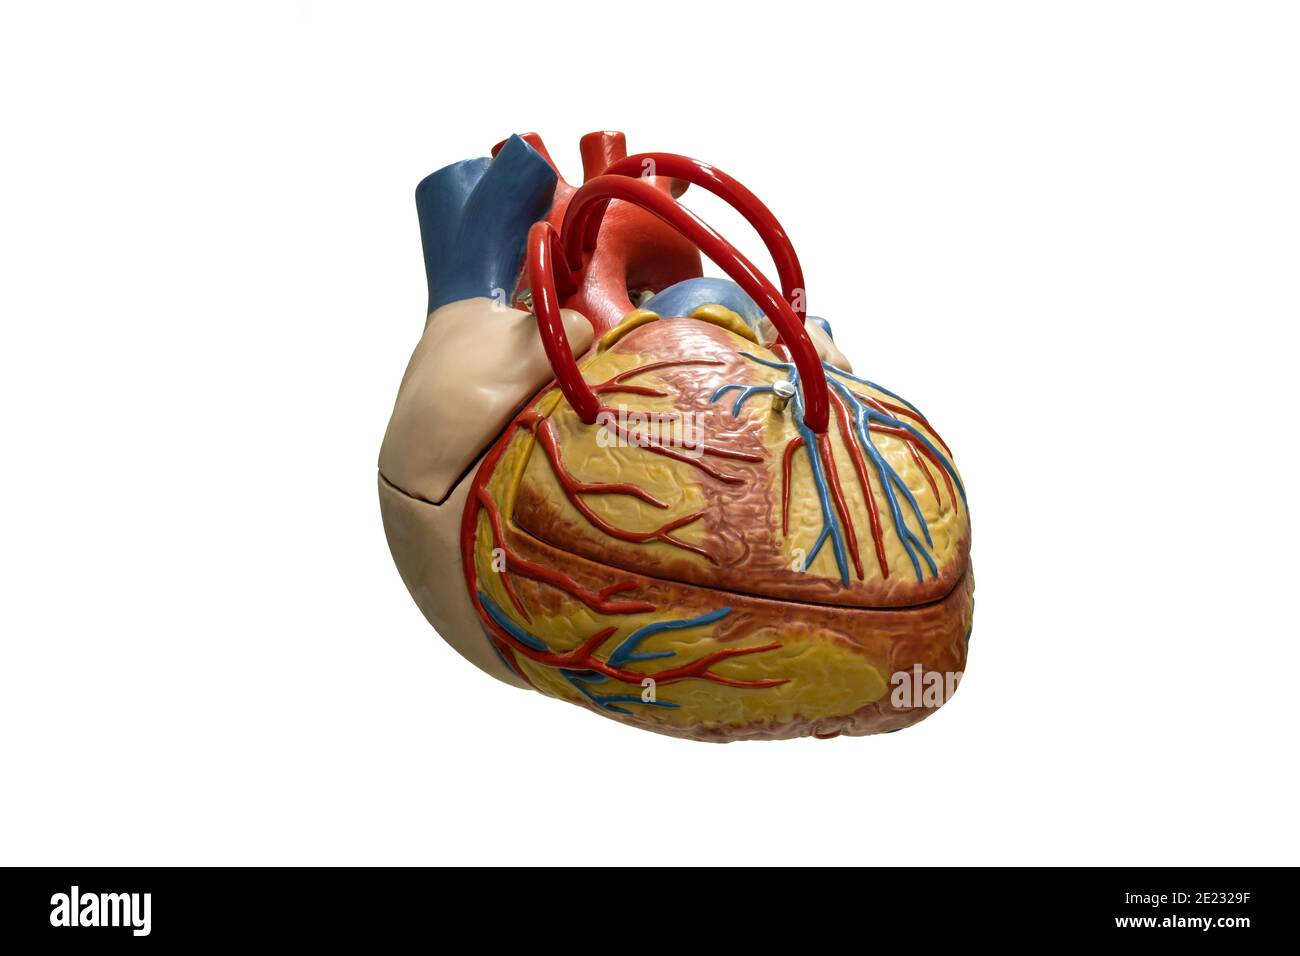 Anatomia umana cuore modello in plastica isolato su sfondo bianco. Foto Stock